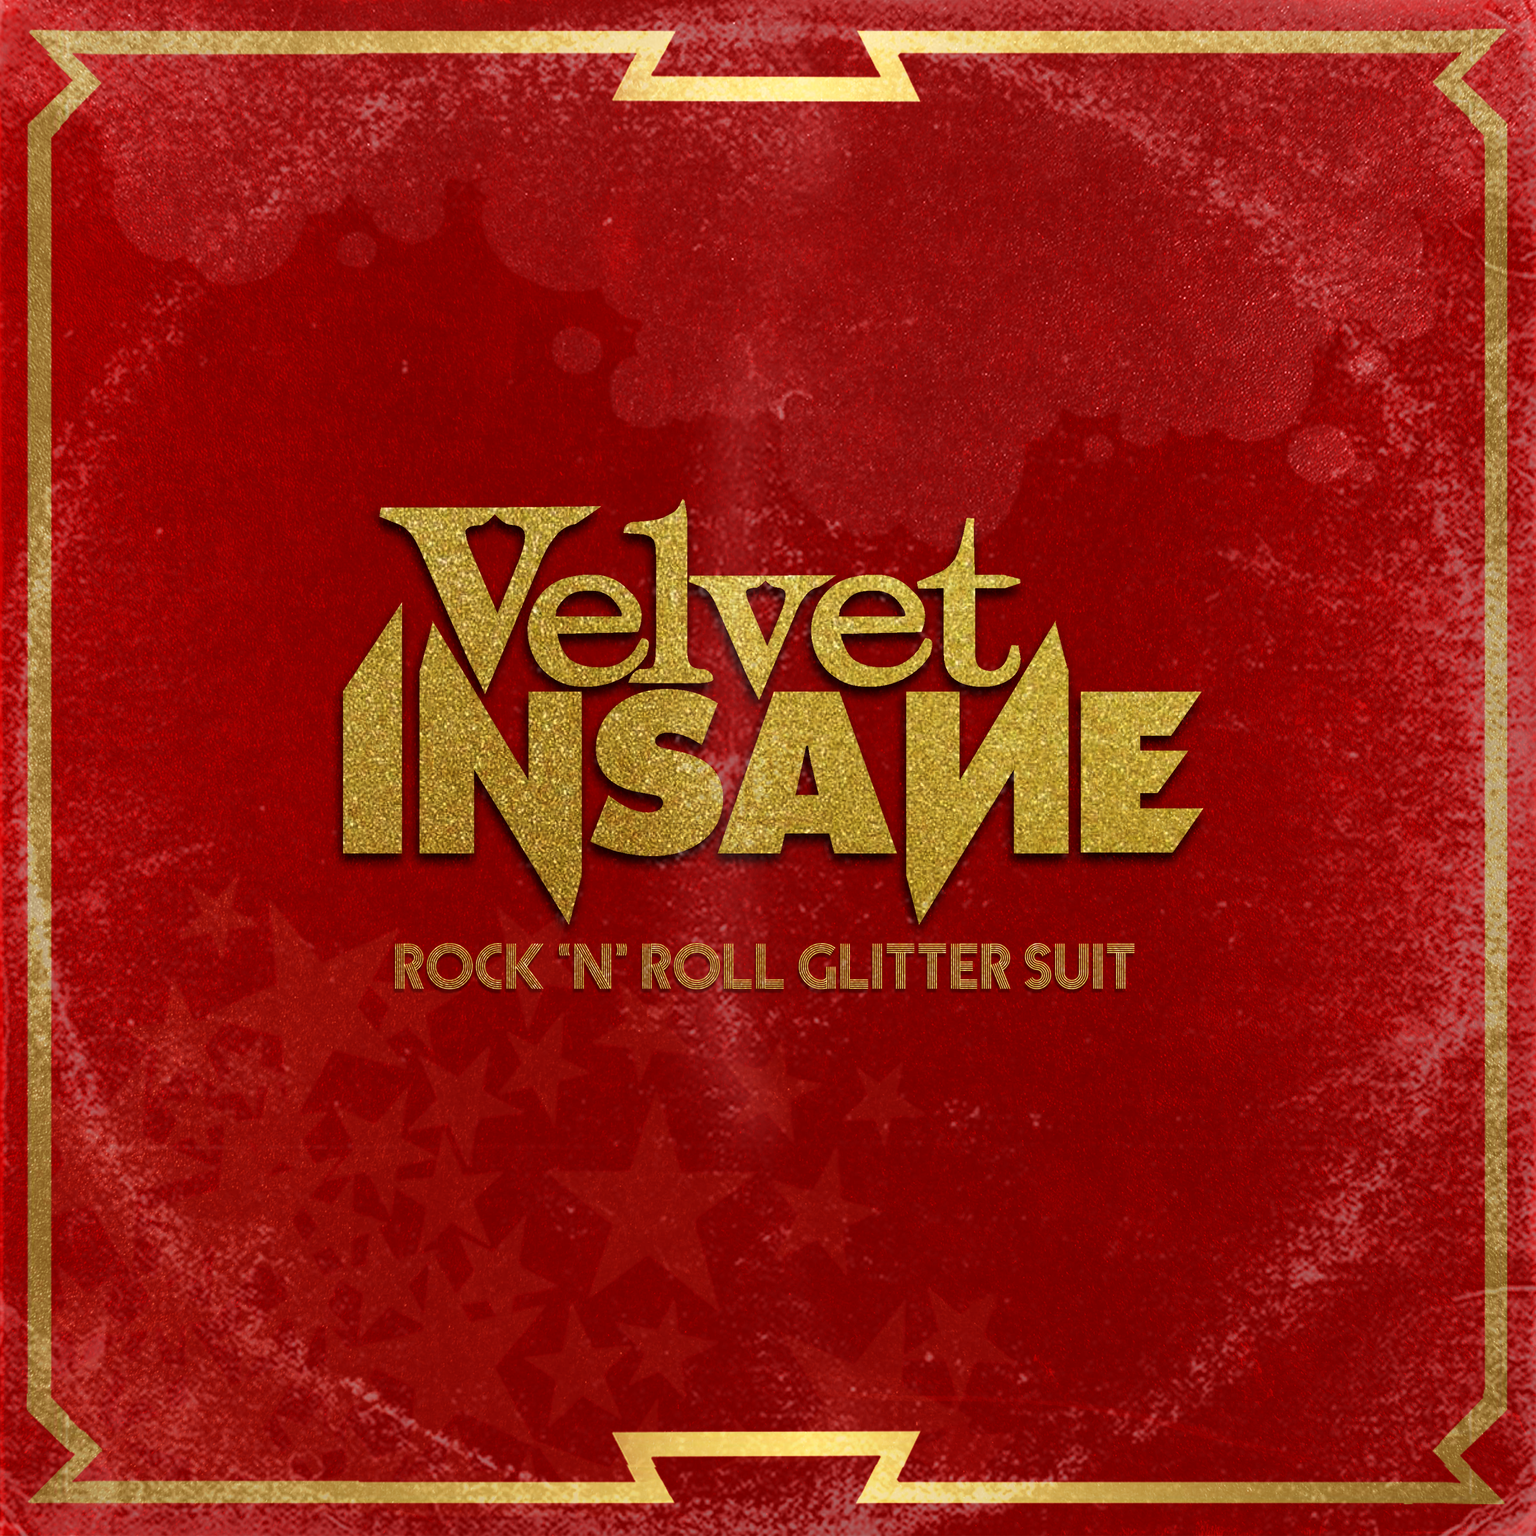 Velvet Insane - Rock 'N' Roll Glitter Suit (2021)